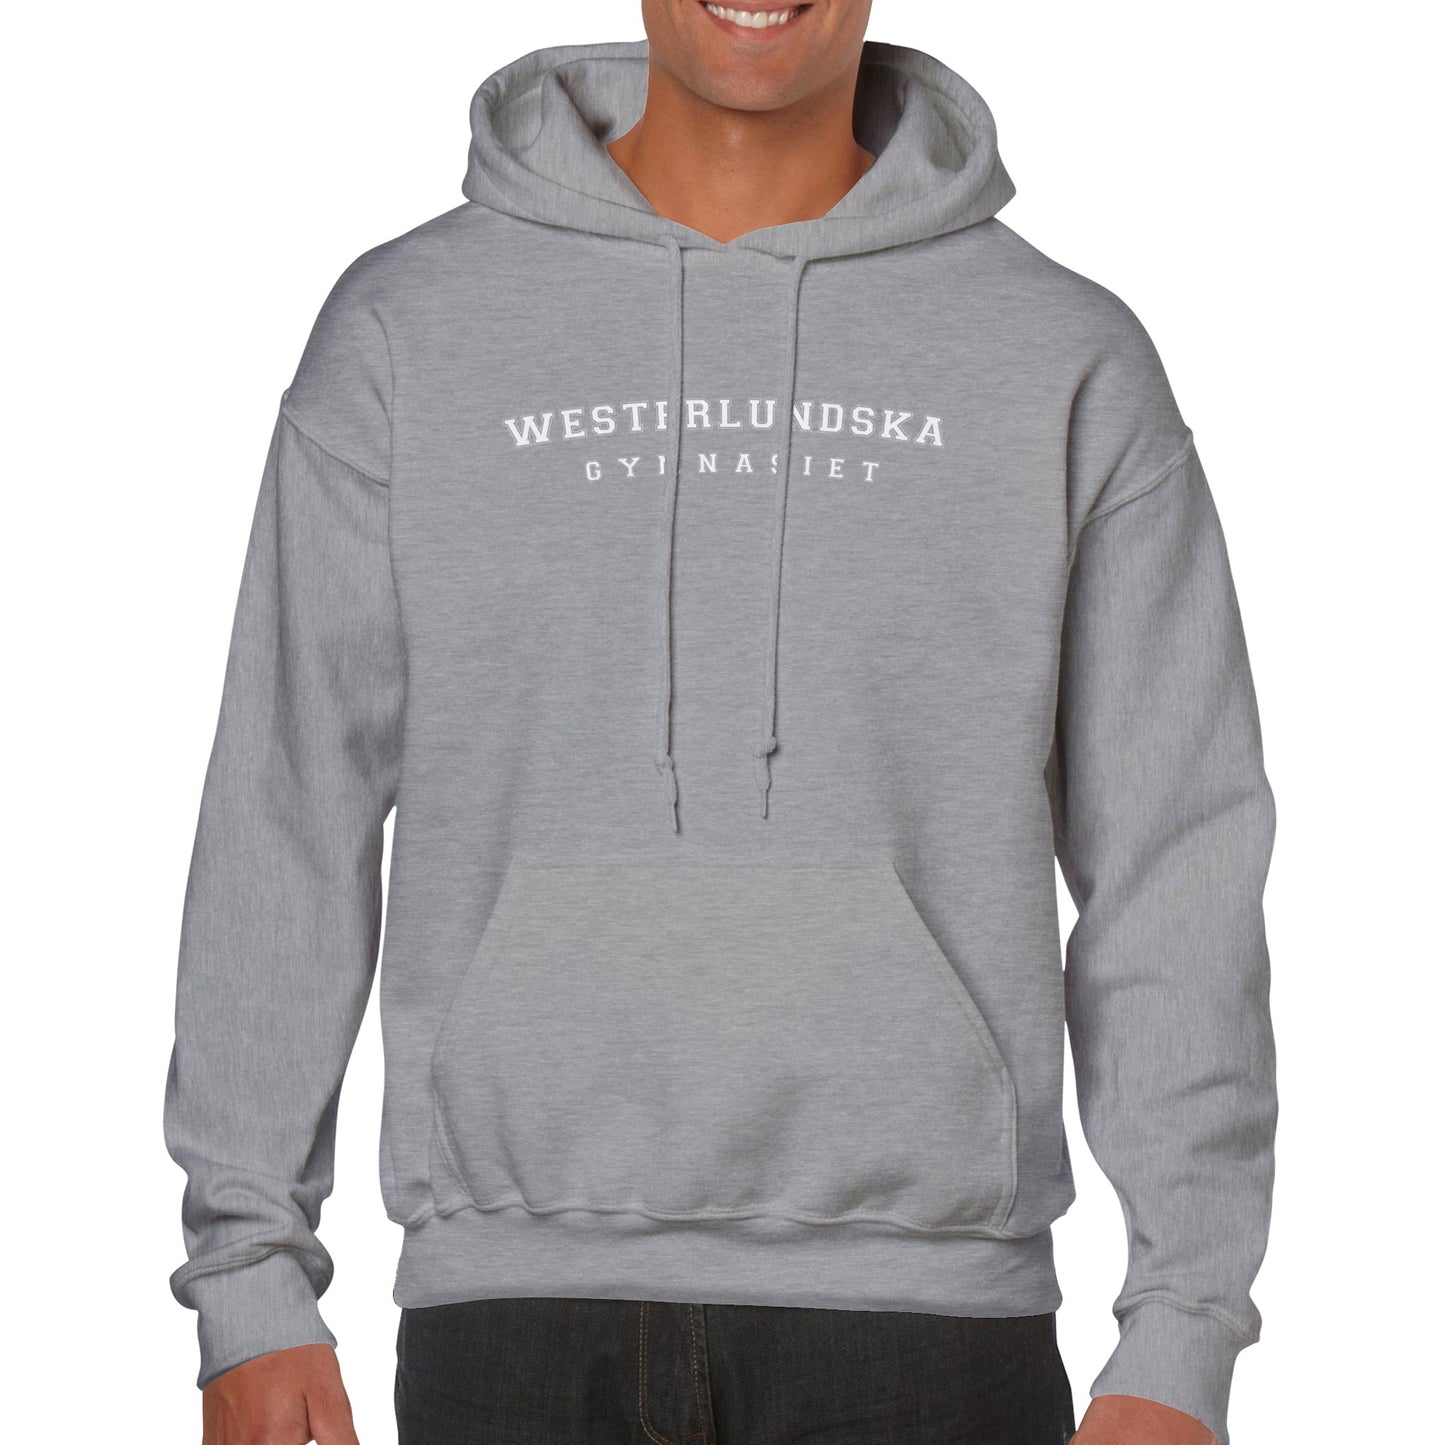 WESTERLUNDSKA GYMNASIET - Unisex hoodie - 5 färger